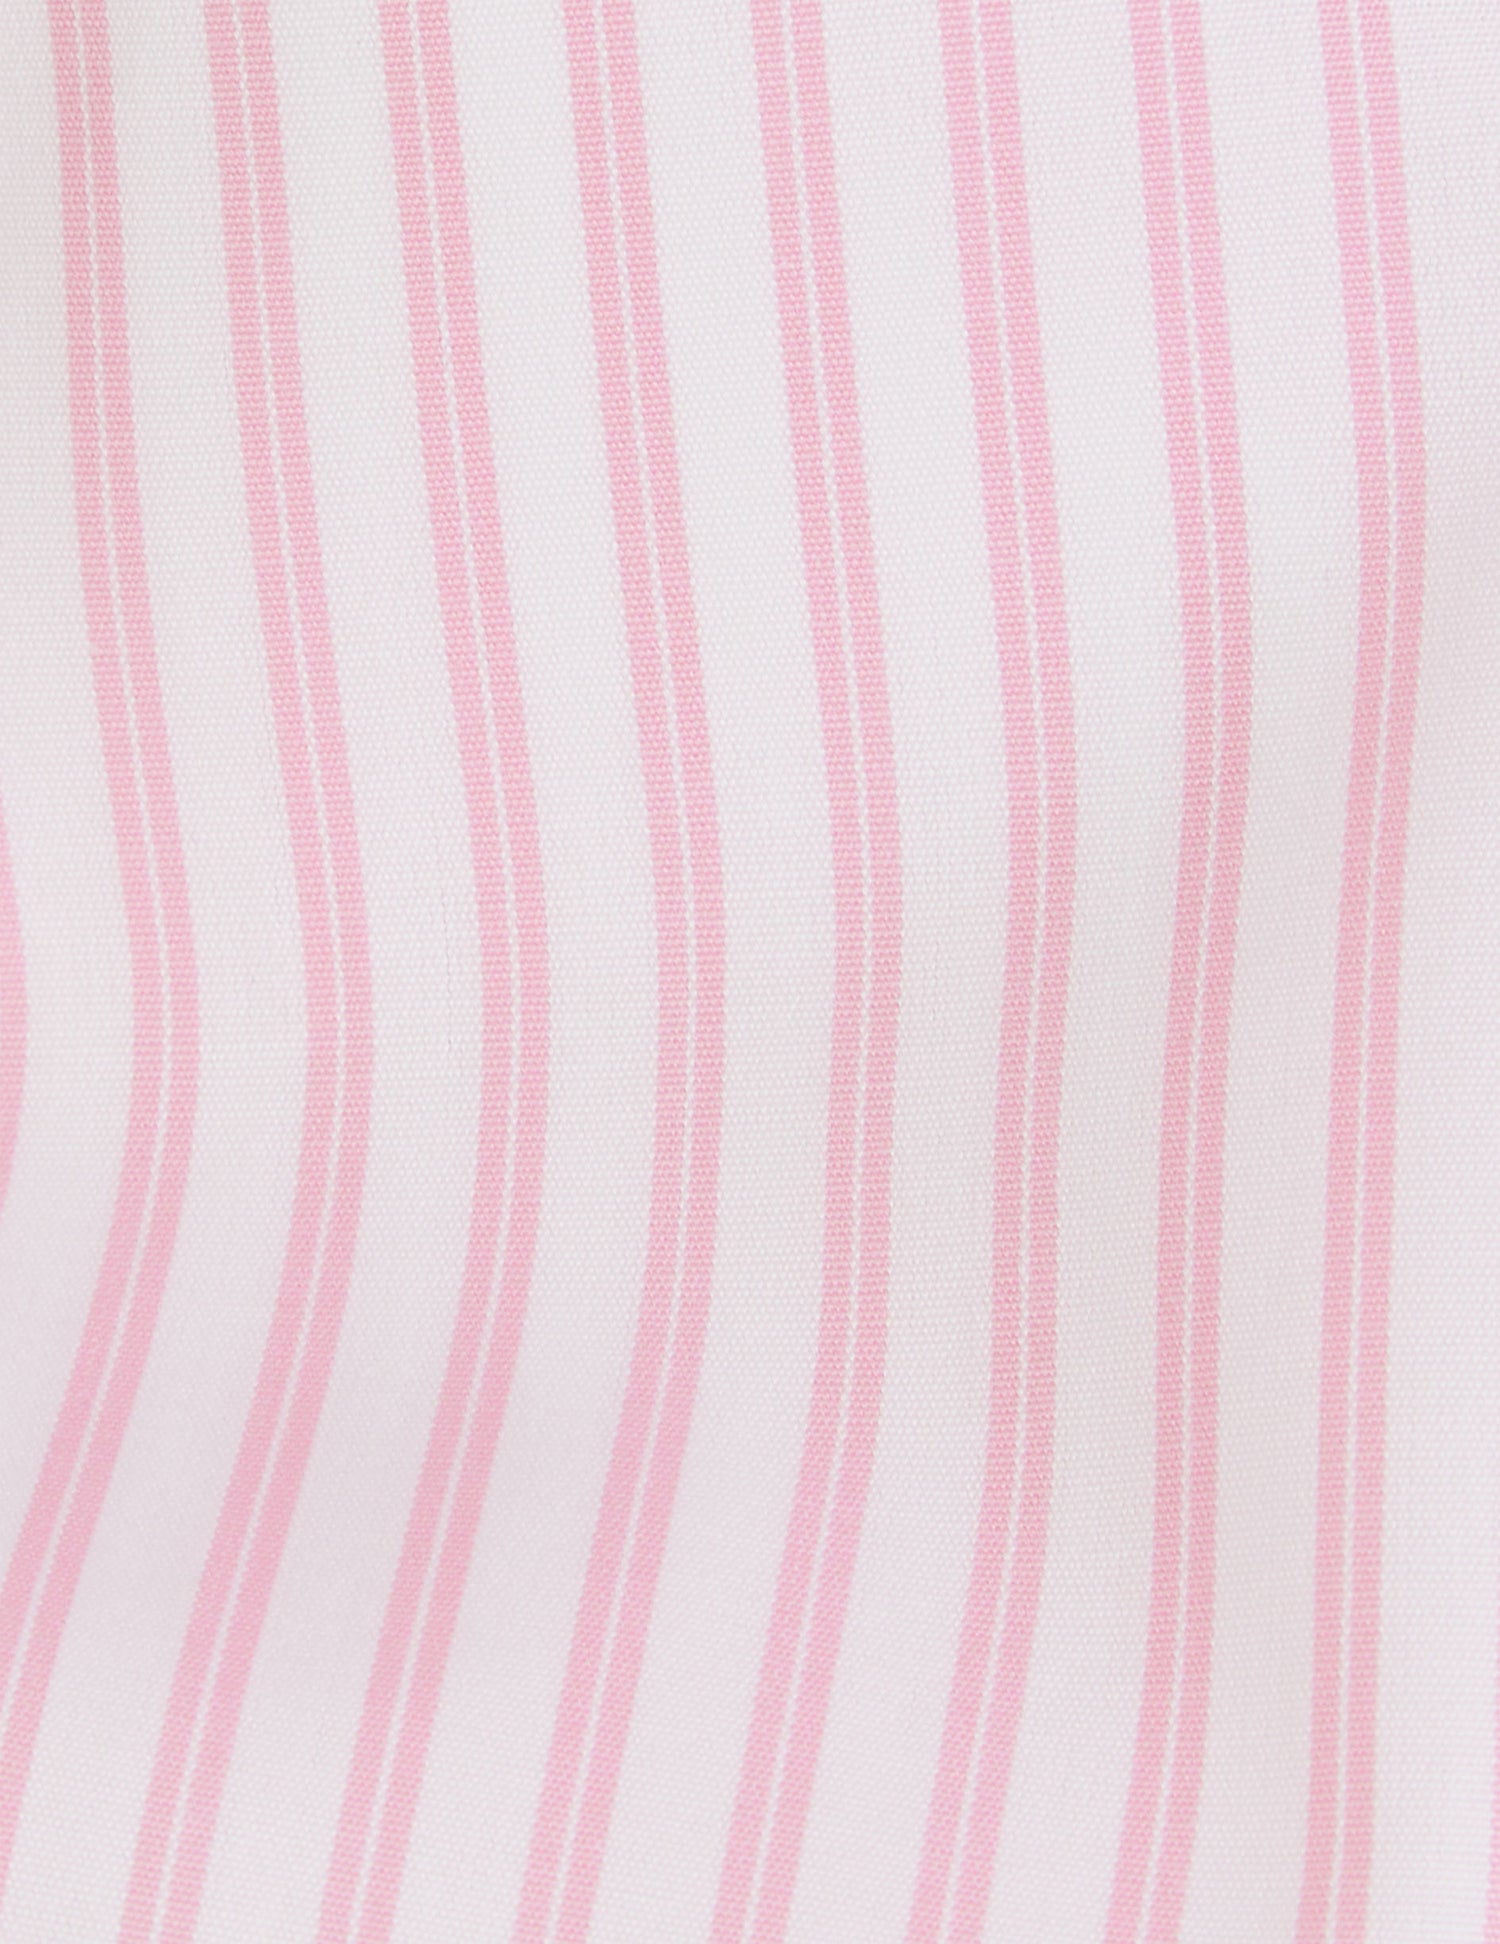 Irene Hidden button placket pink shirt - Poplin - Shirt Collar#6